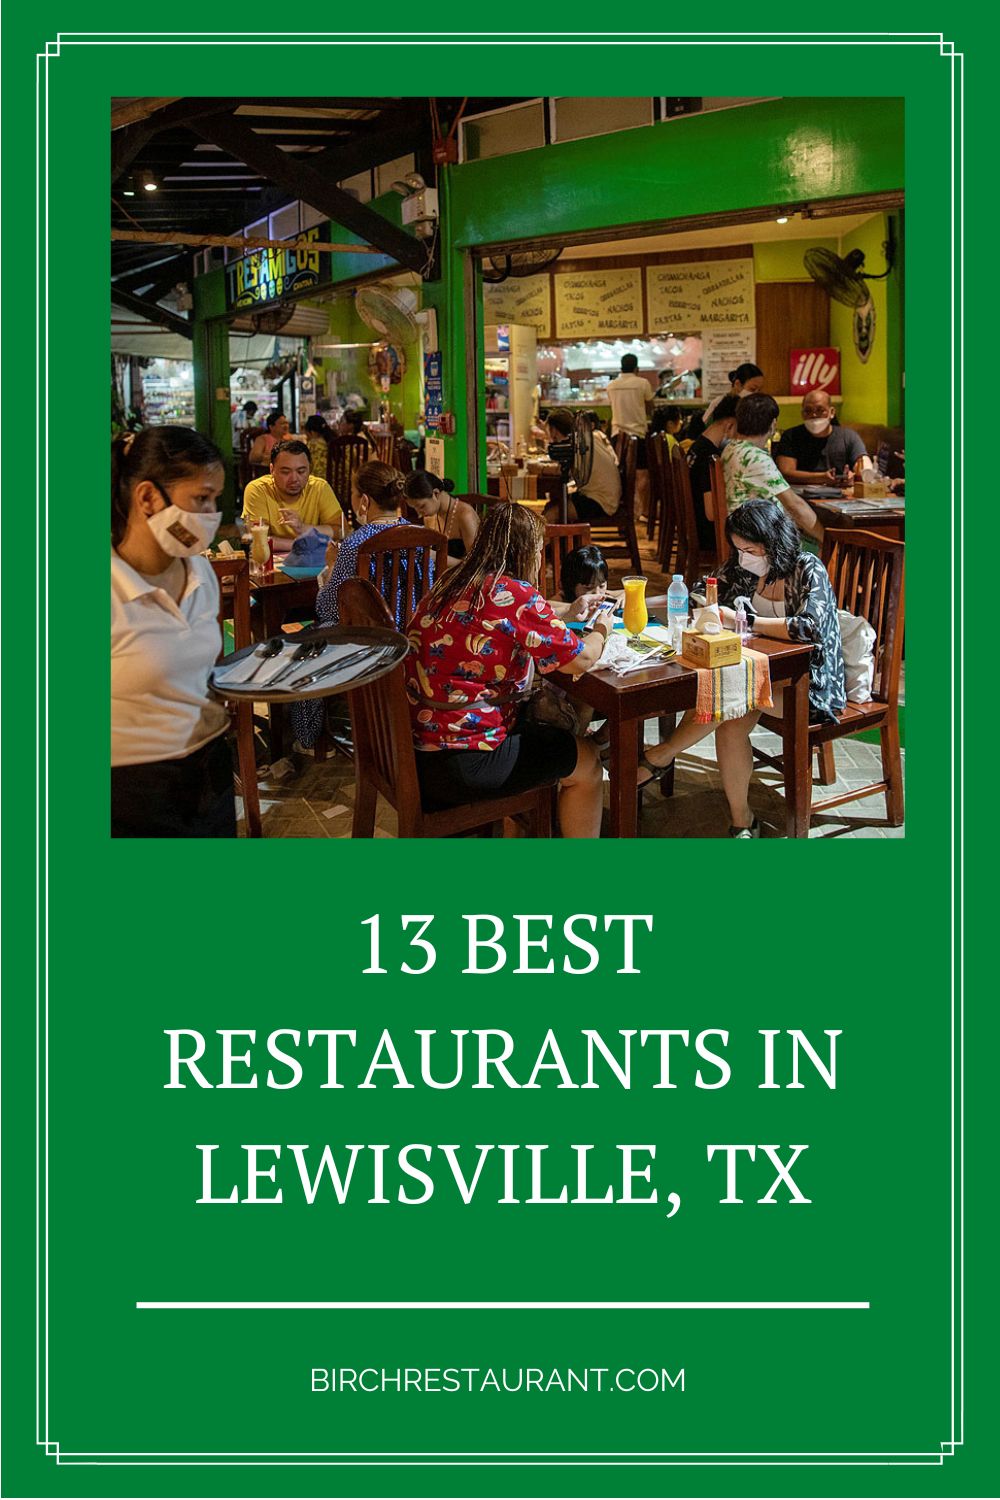 Best Restaurants in Lewisville